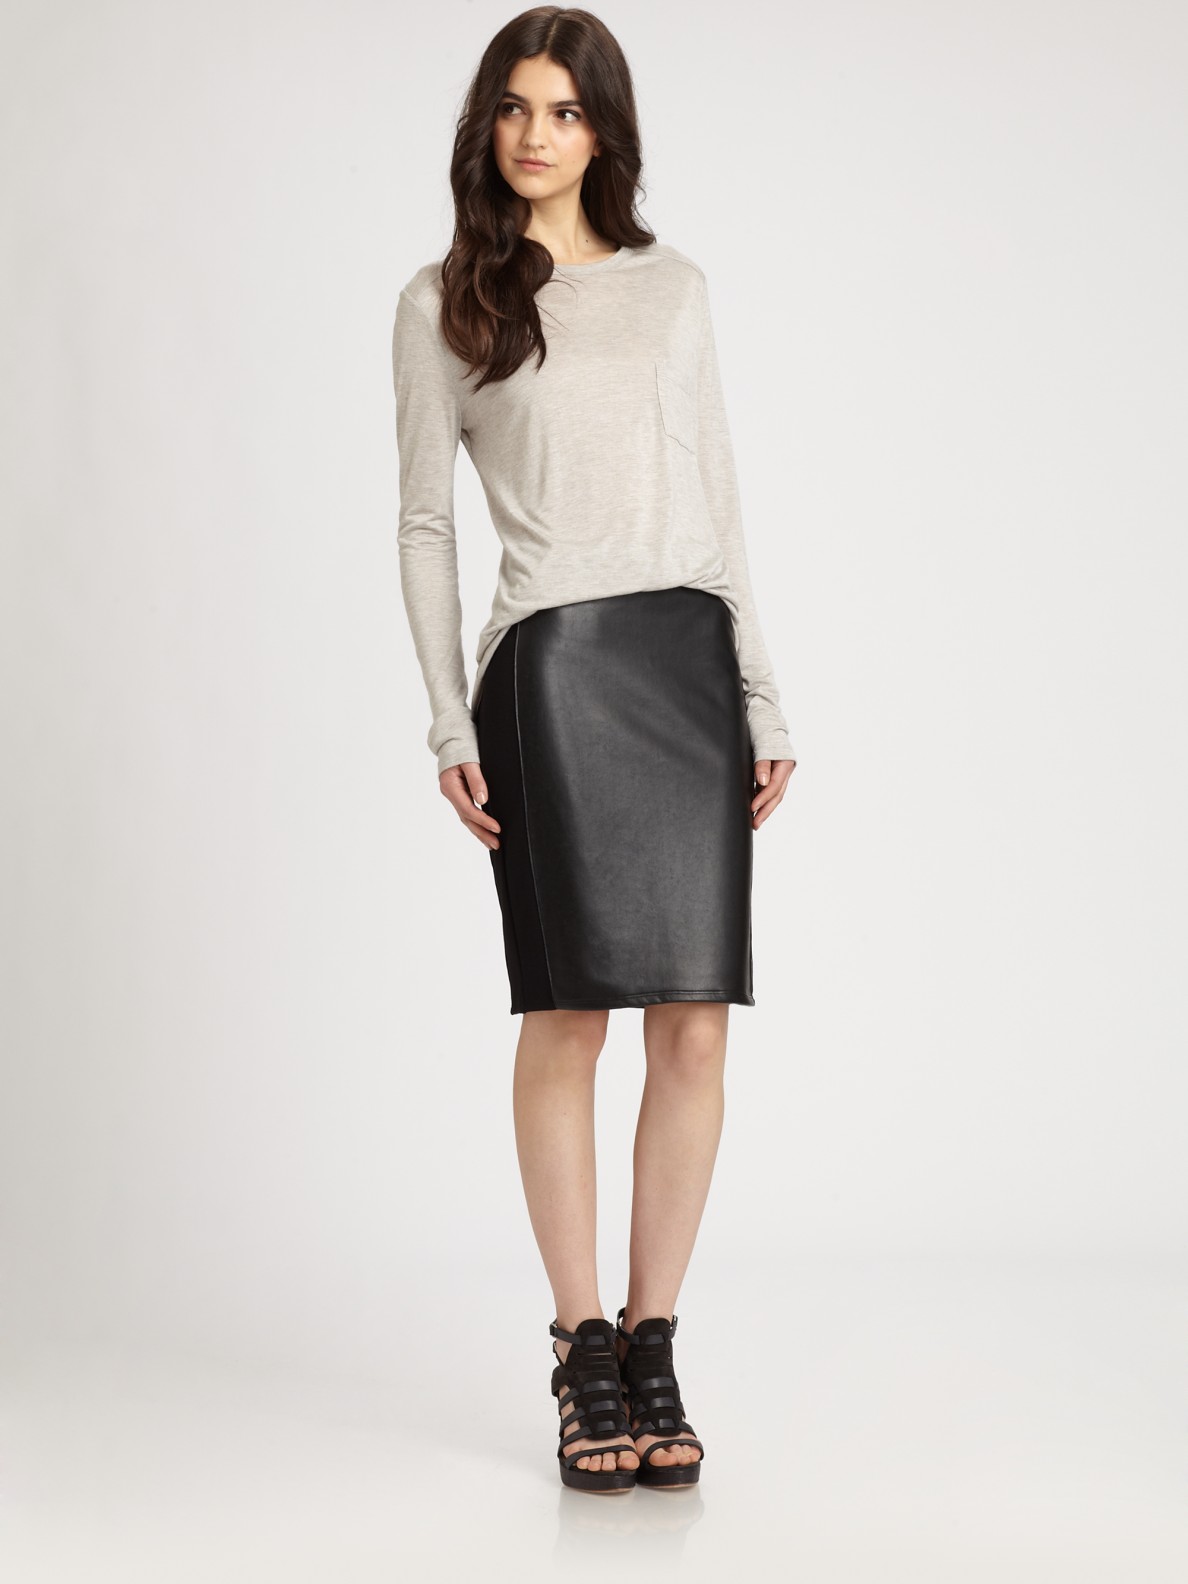 Brainy Mademoiselle Leather Skirt